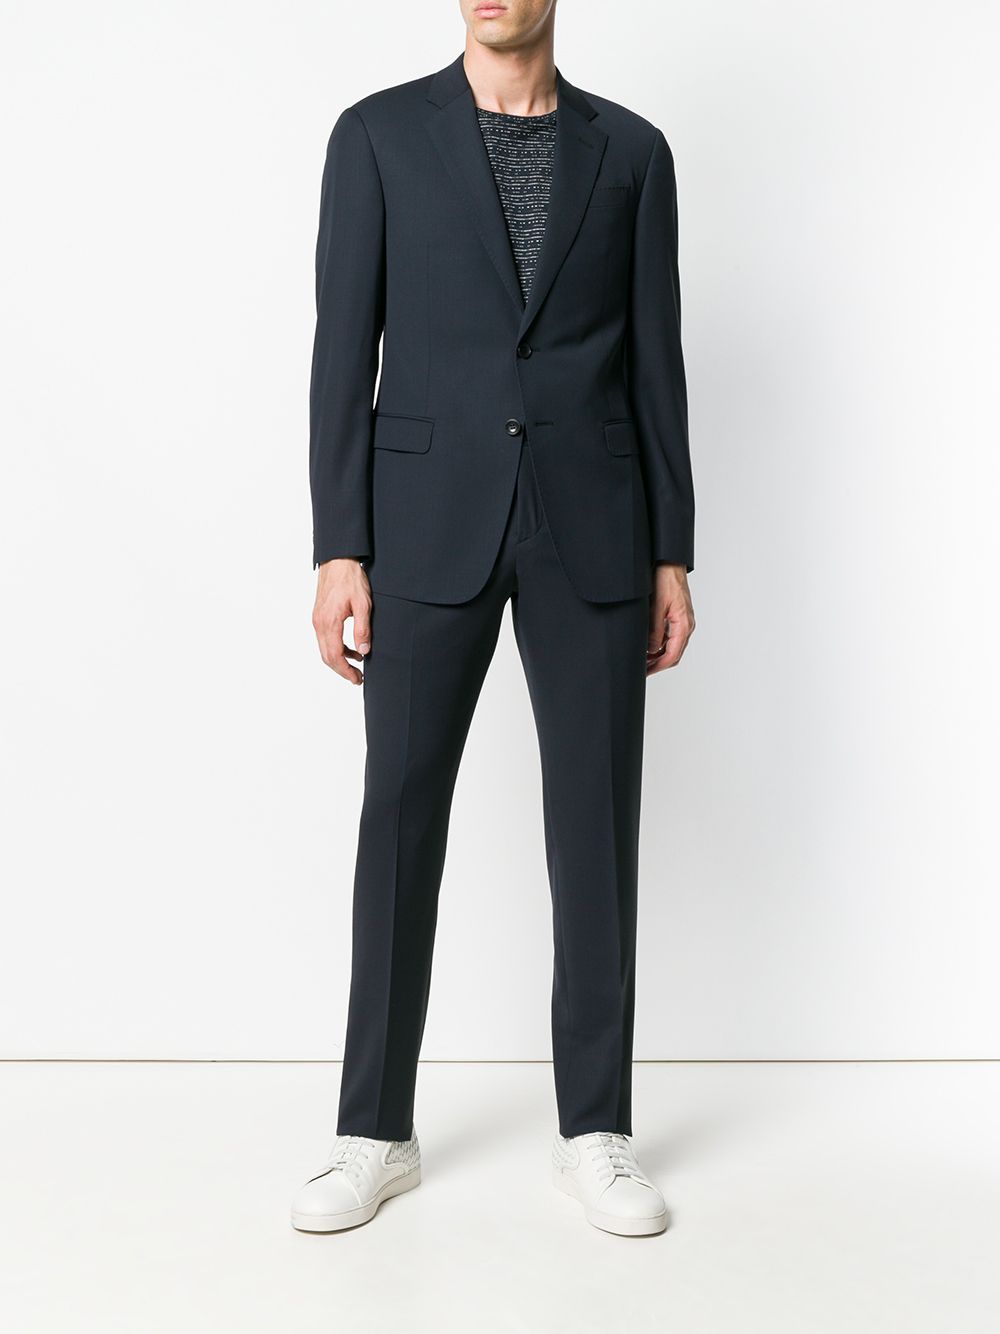 Giorgio Armani GIORGIO ARMANI- Men's Suit With Logo